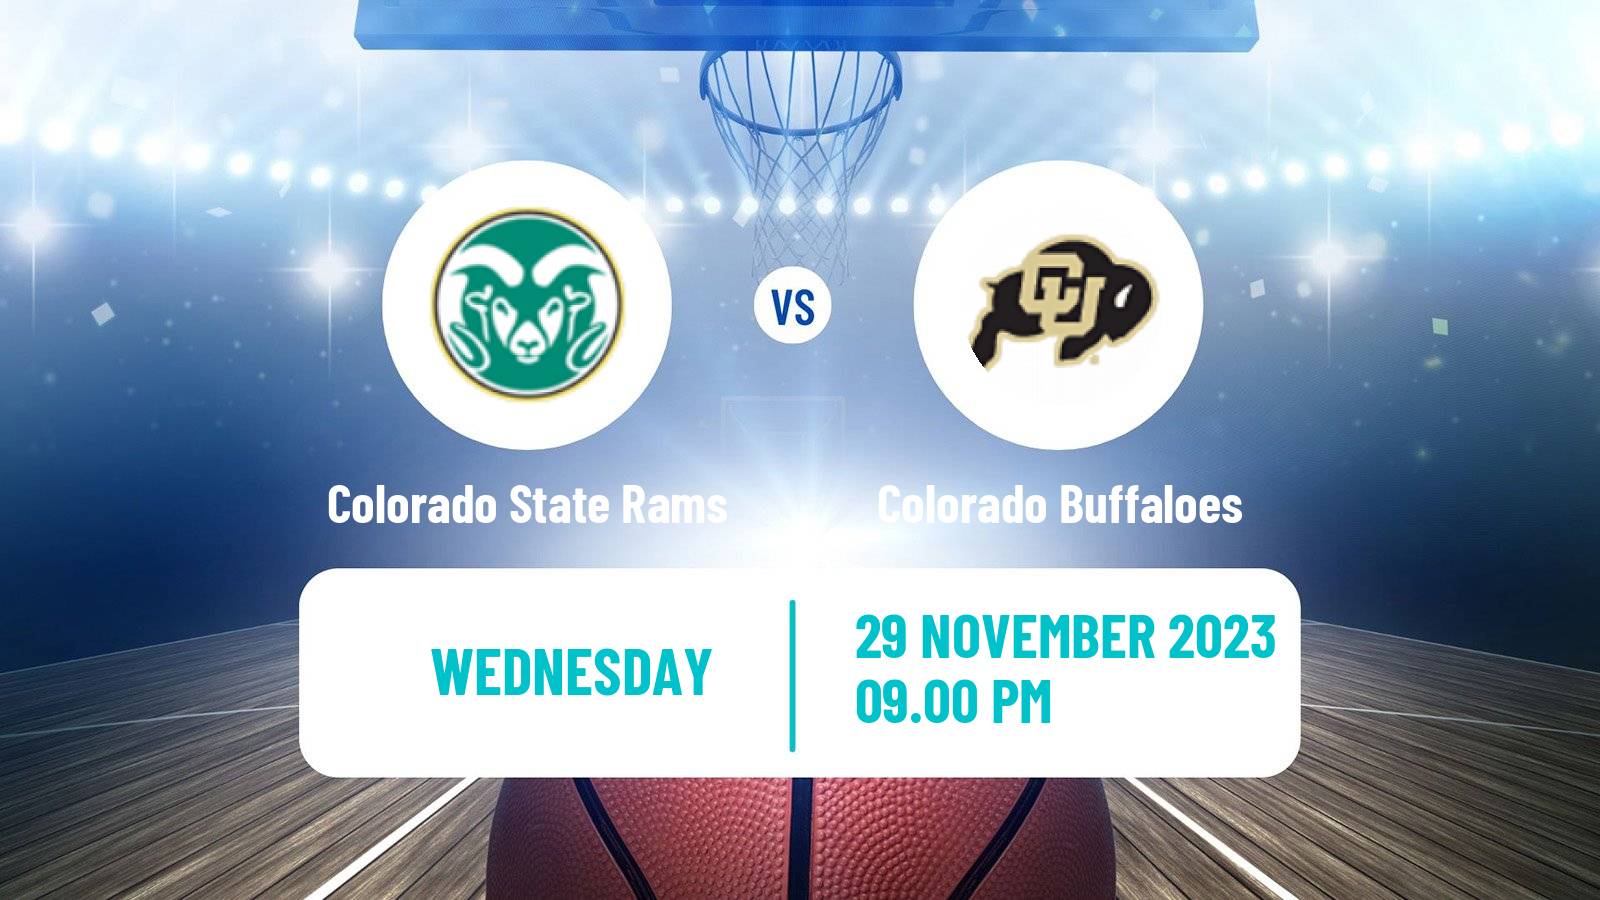 Basketball NCAA College Basketball Colorado State Rams - Colorado Buffaloes